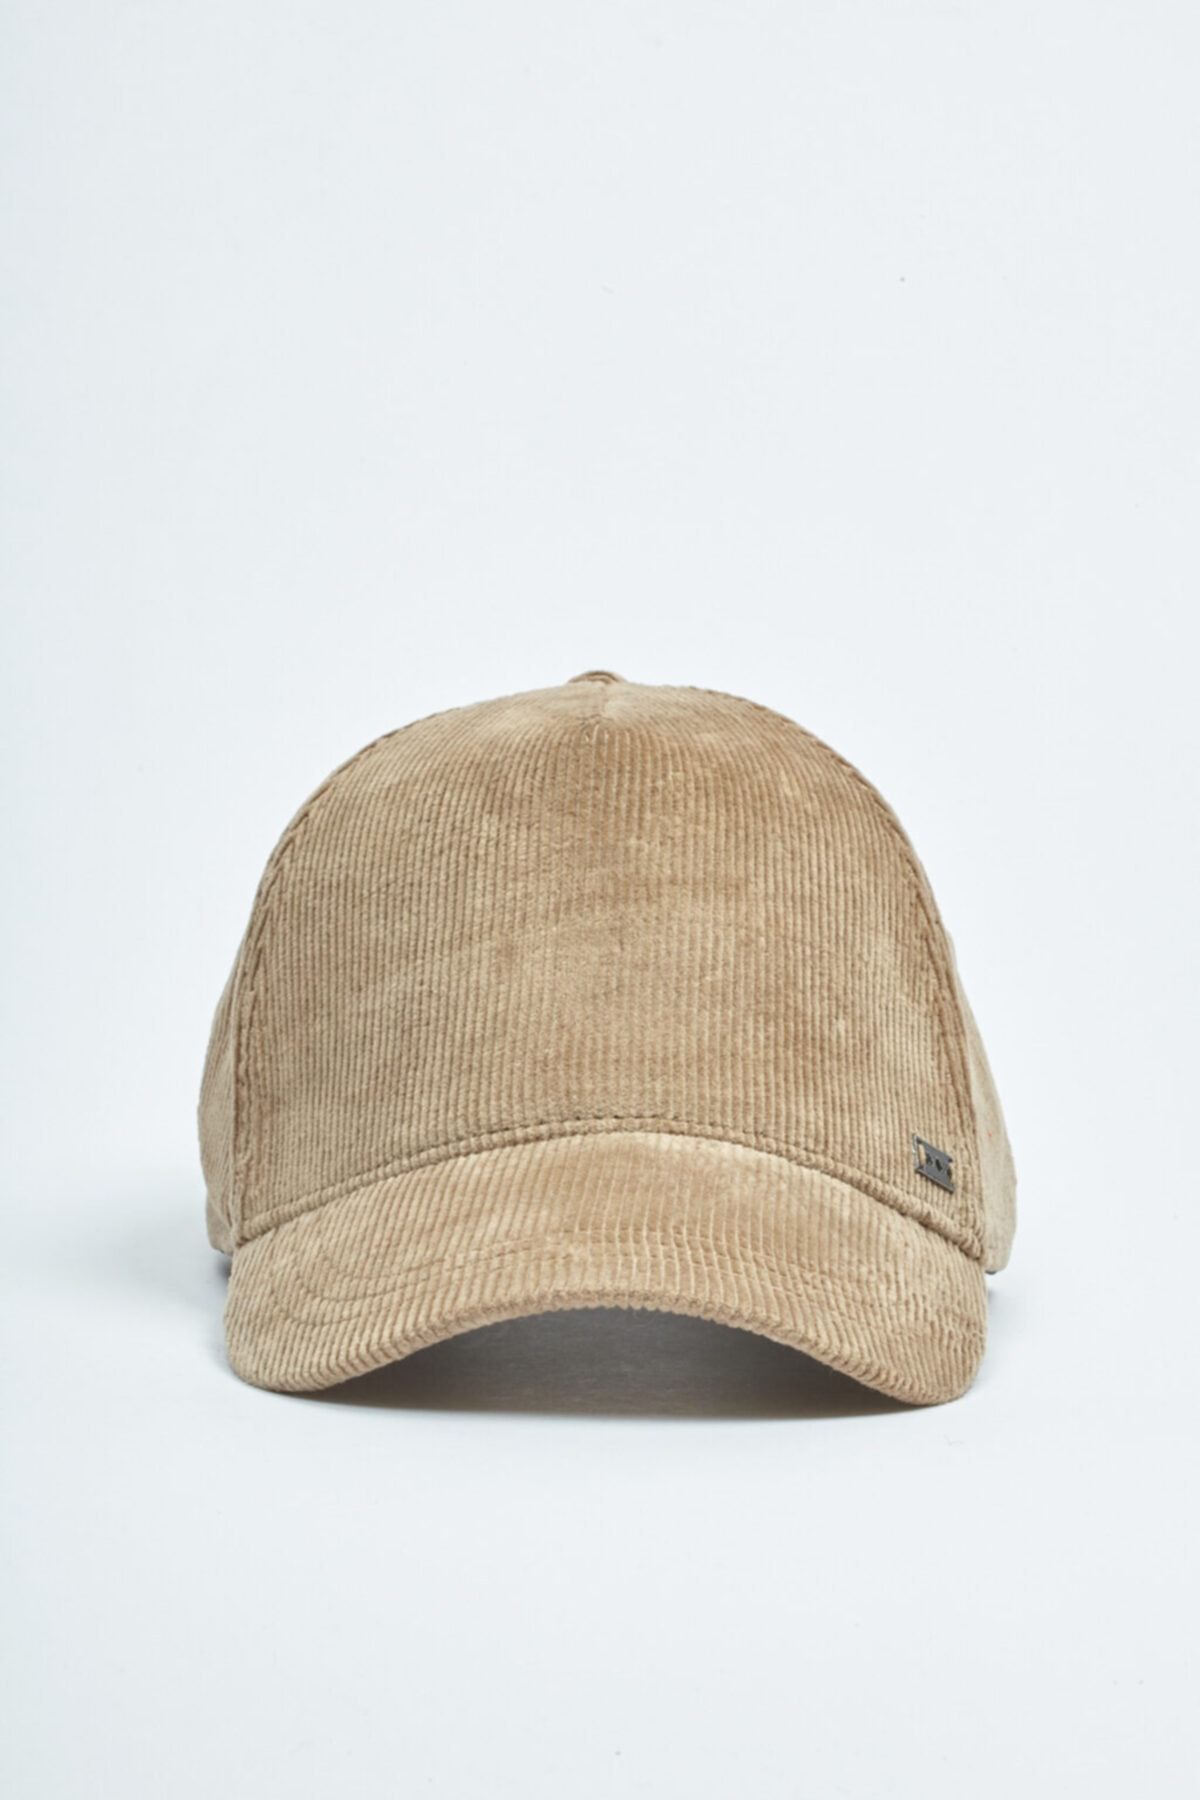 Avva Erkek Spor Şapkası A02y9215